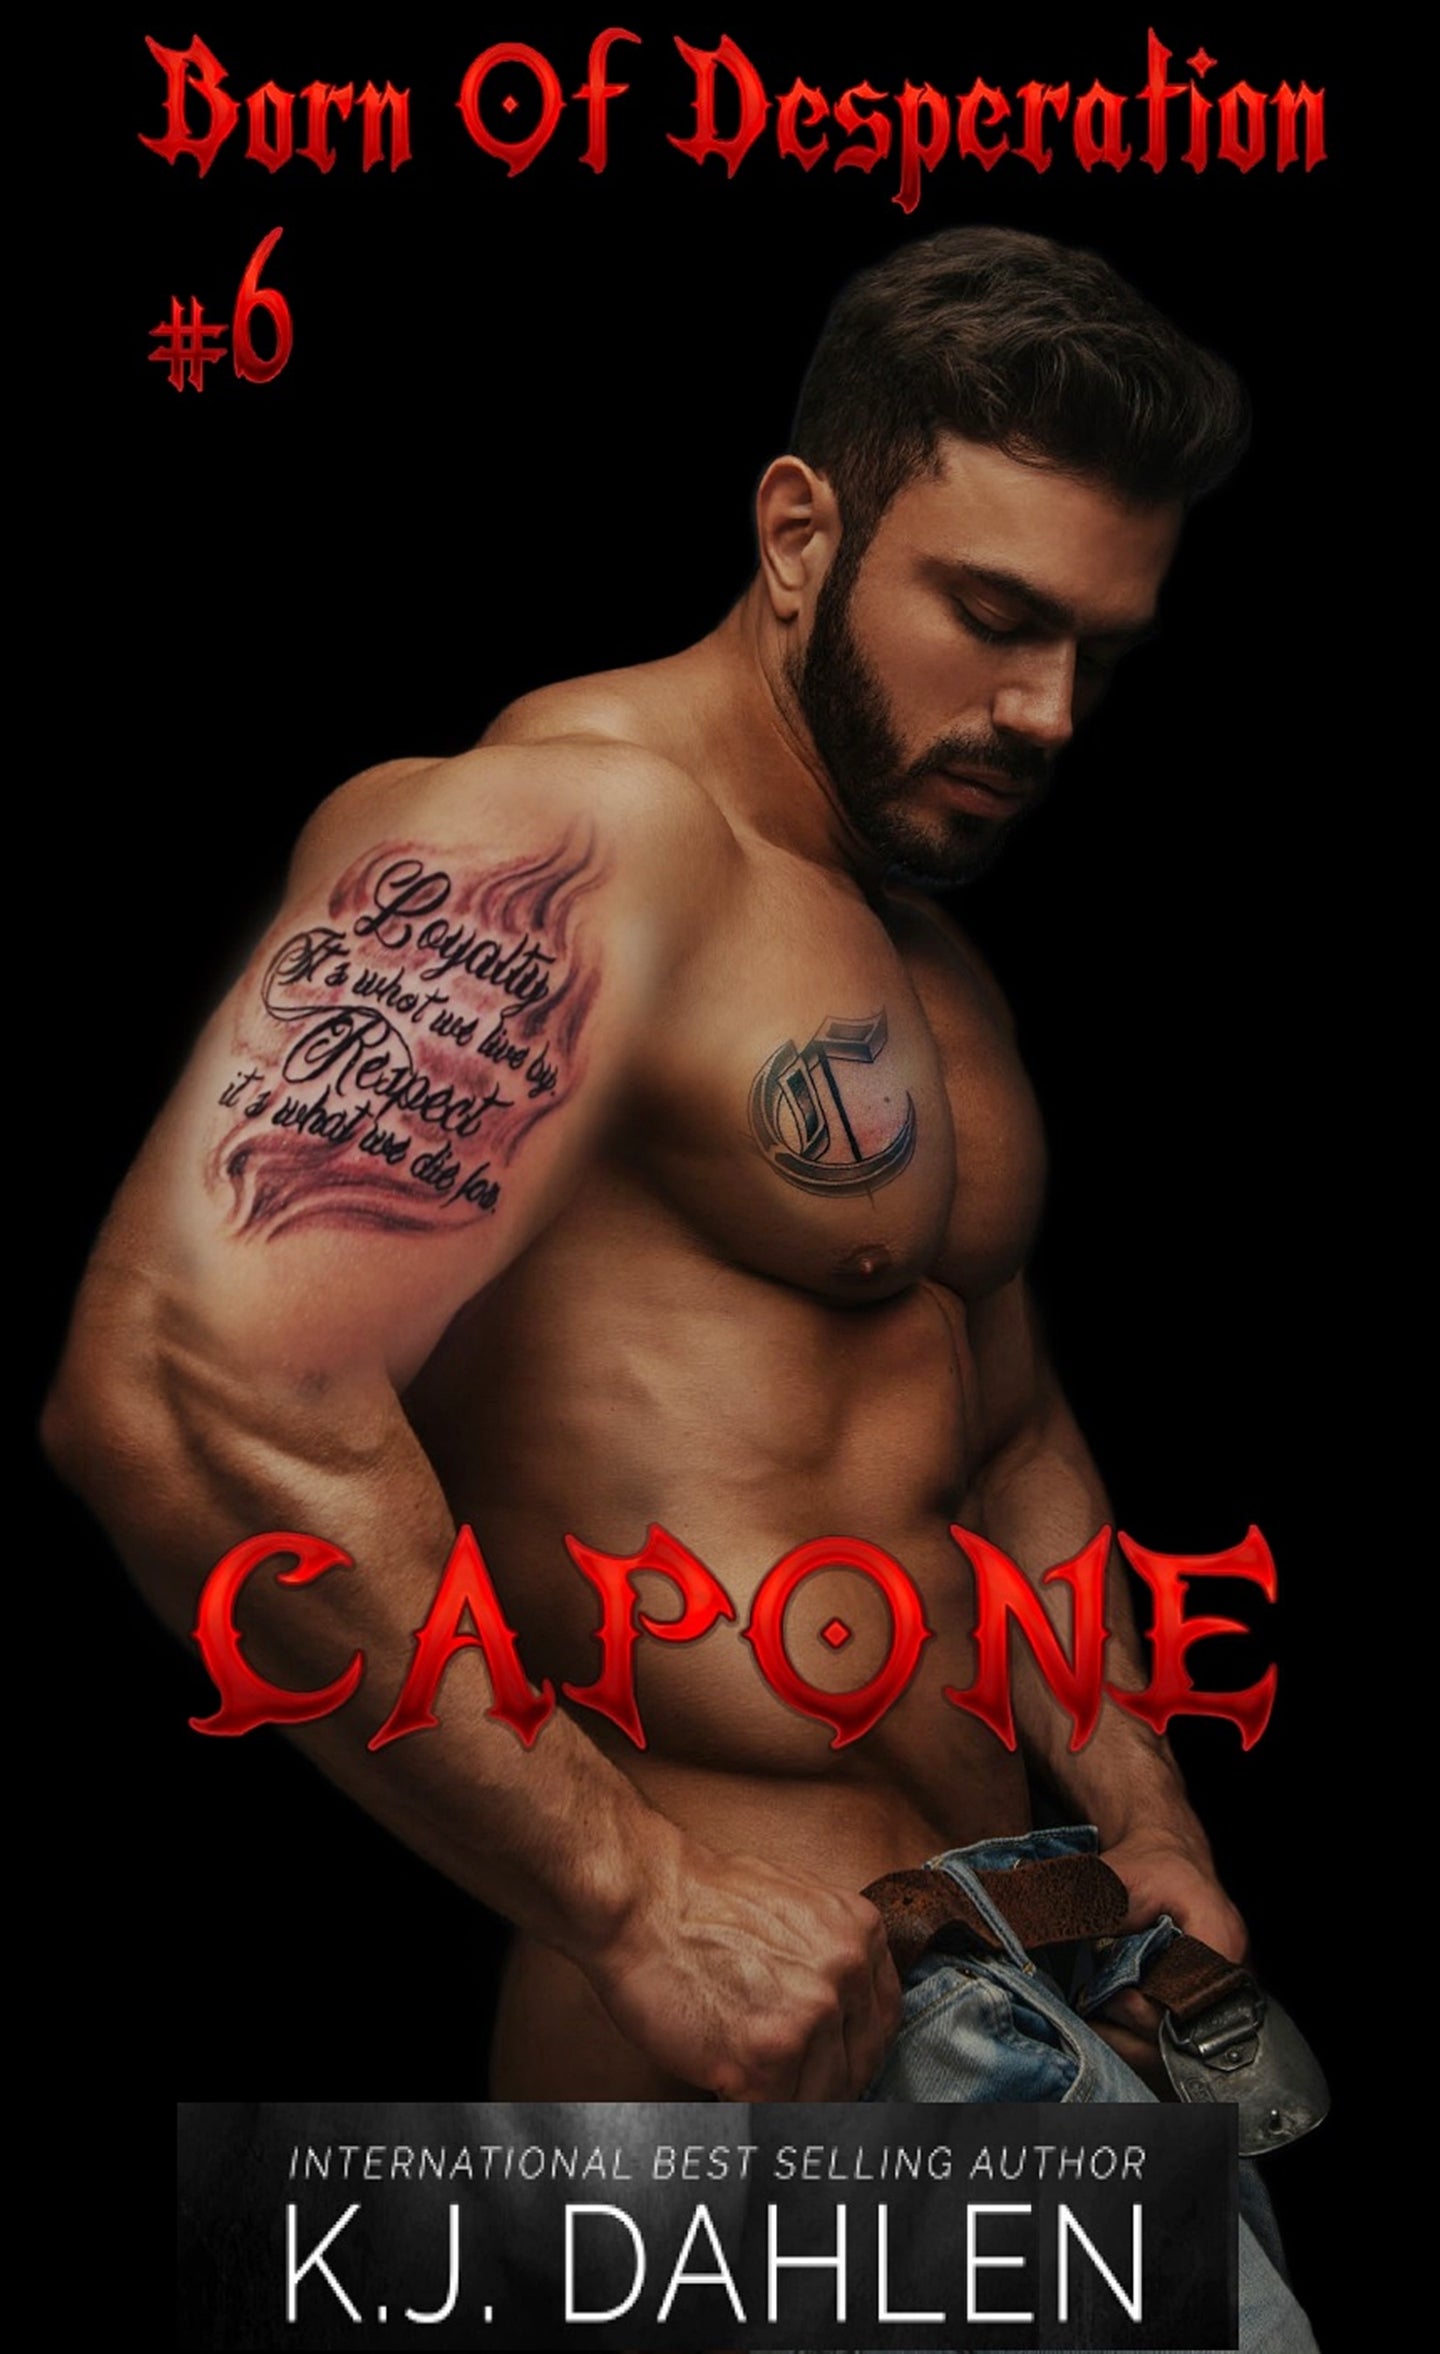 Capone-Born Of Desperation#6-Single